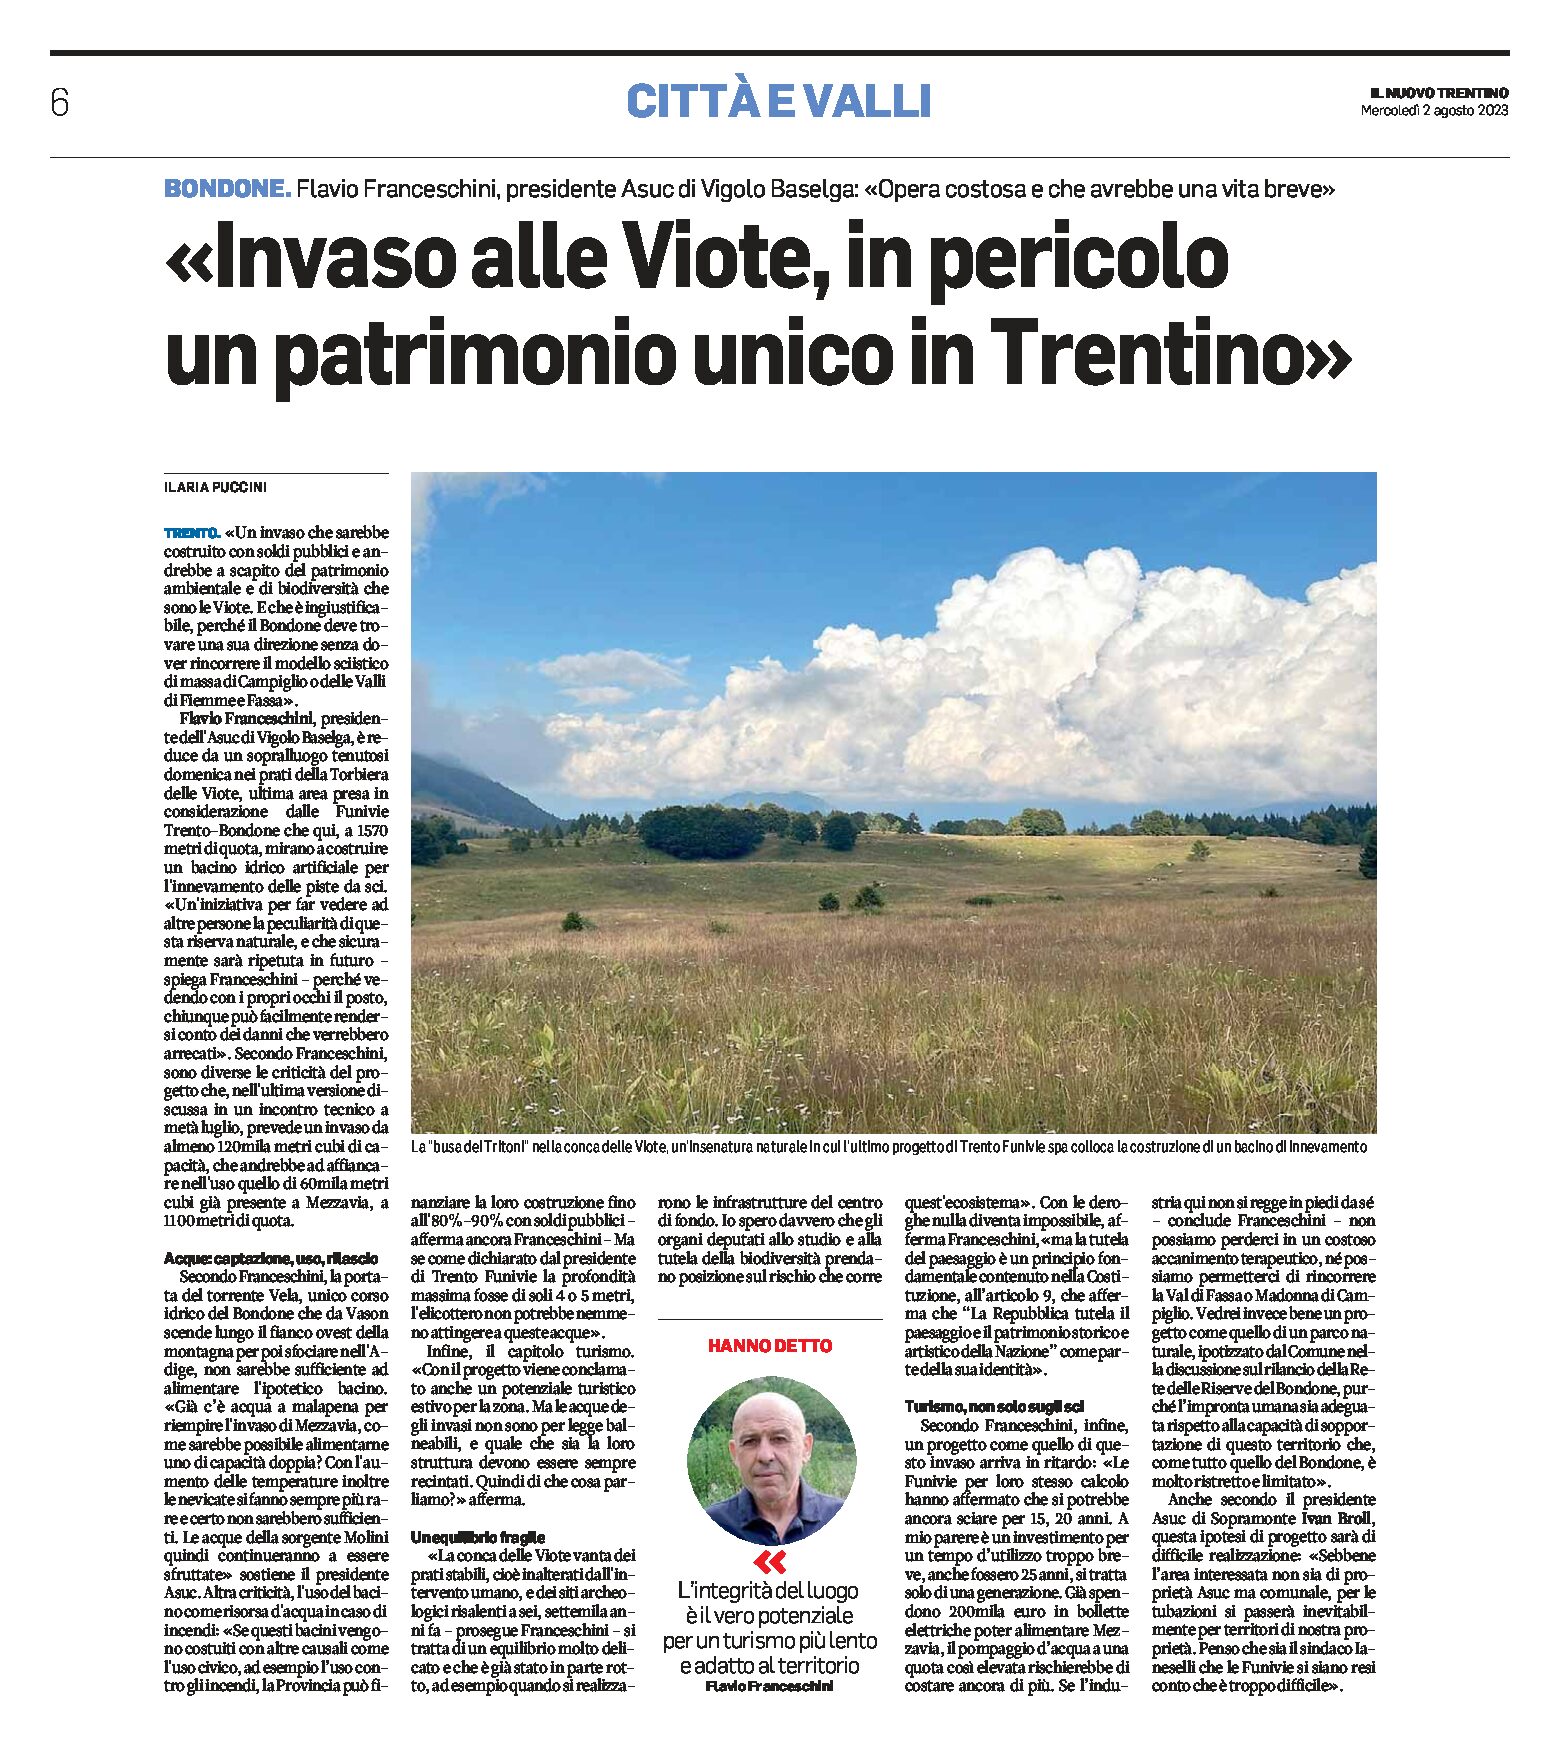 Bondone, bacino alle Viote: intervista a Franceschini (Asuc di Vigolo Baselga) “in pericolo un patrimonio unico in Trentino”